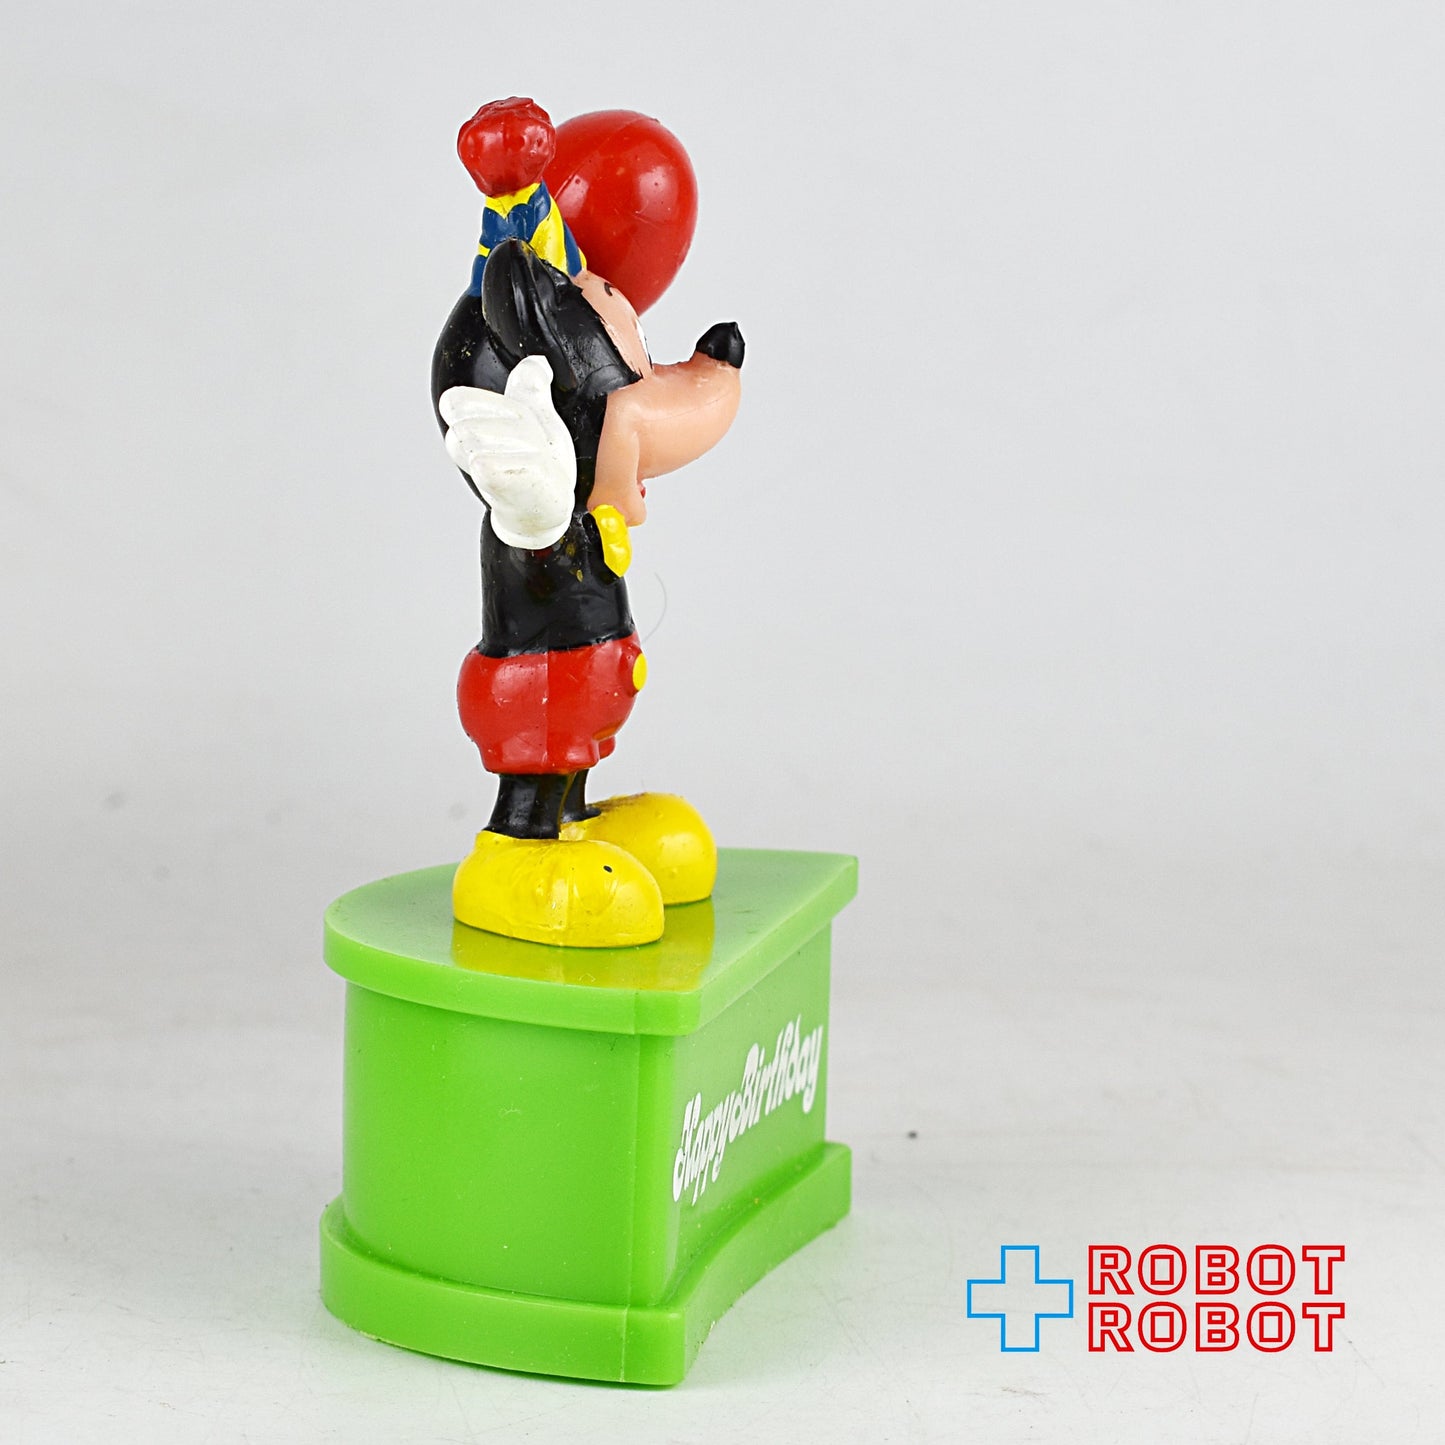 モノグラム社 ディズニー ミッキーマウス ハッピーバースデイ PVCフィギュア 香港